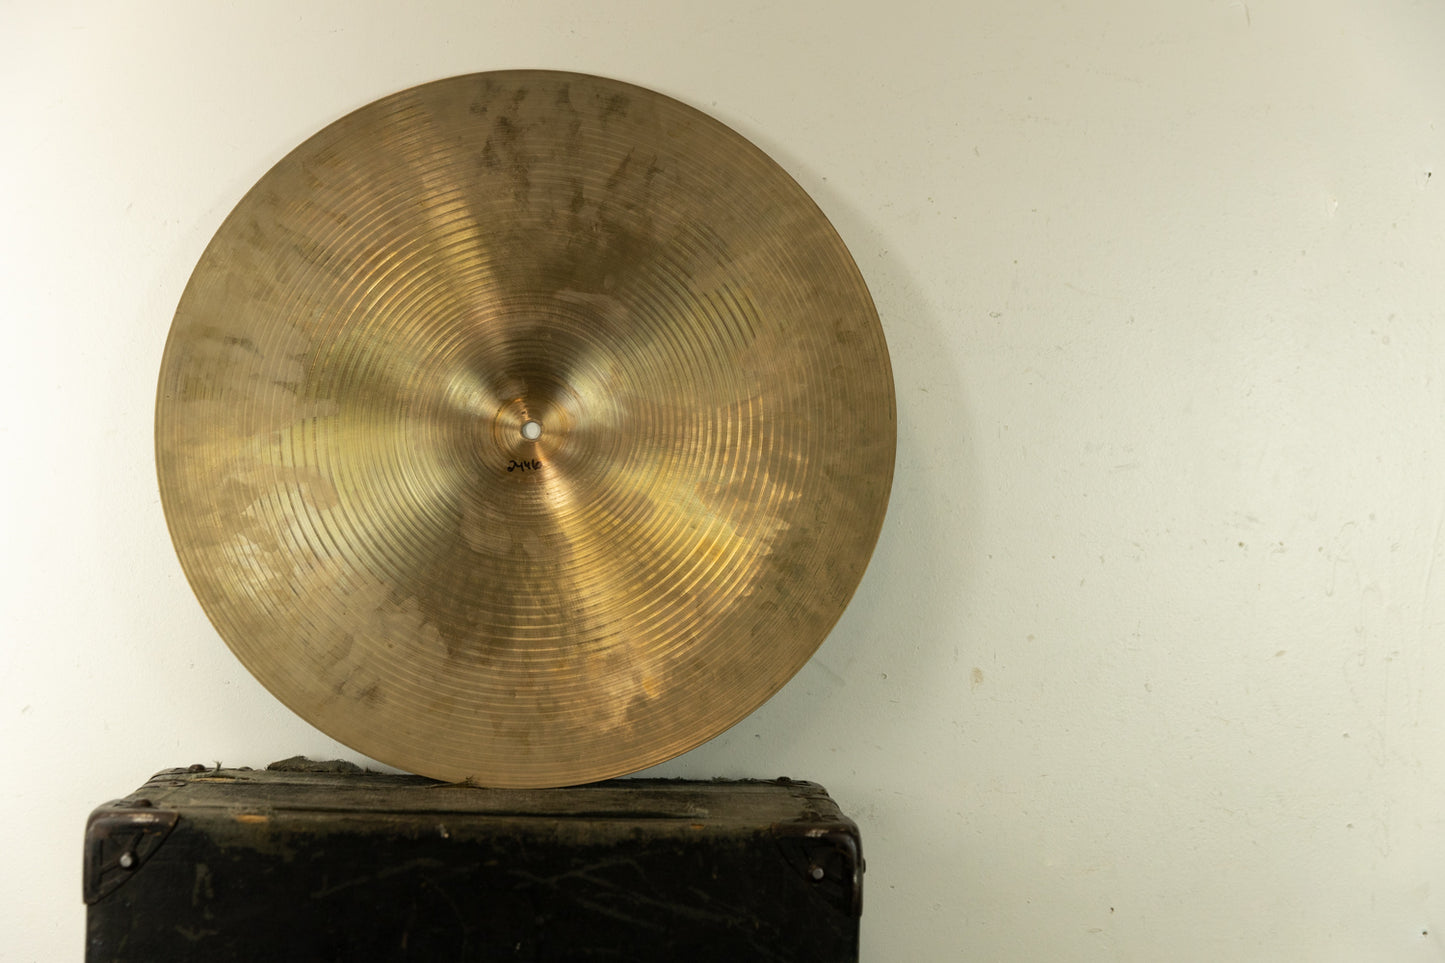 1970s Zildjian A 18" Crash Cymbal 1430g